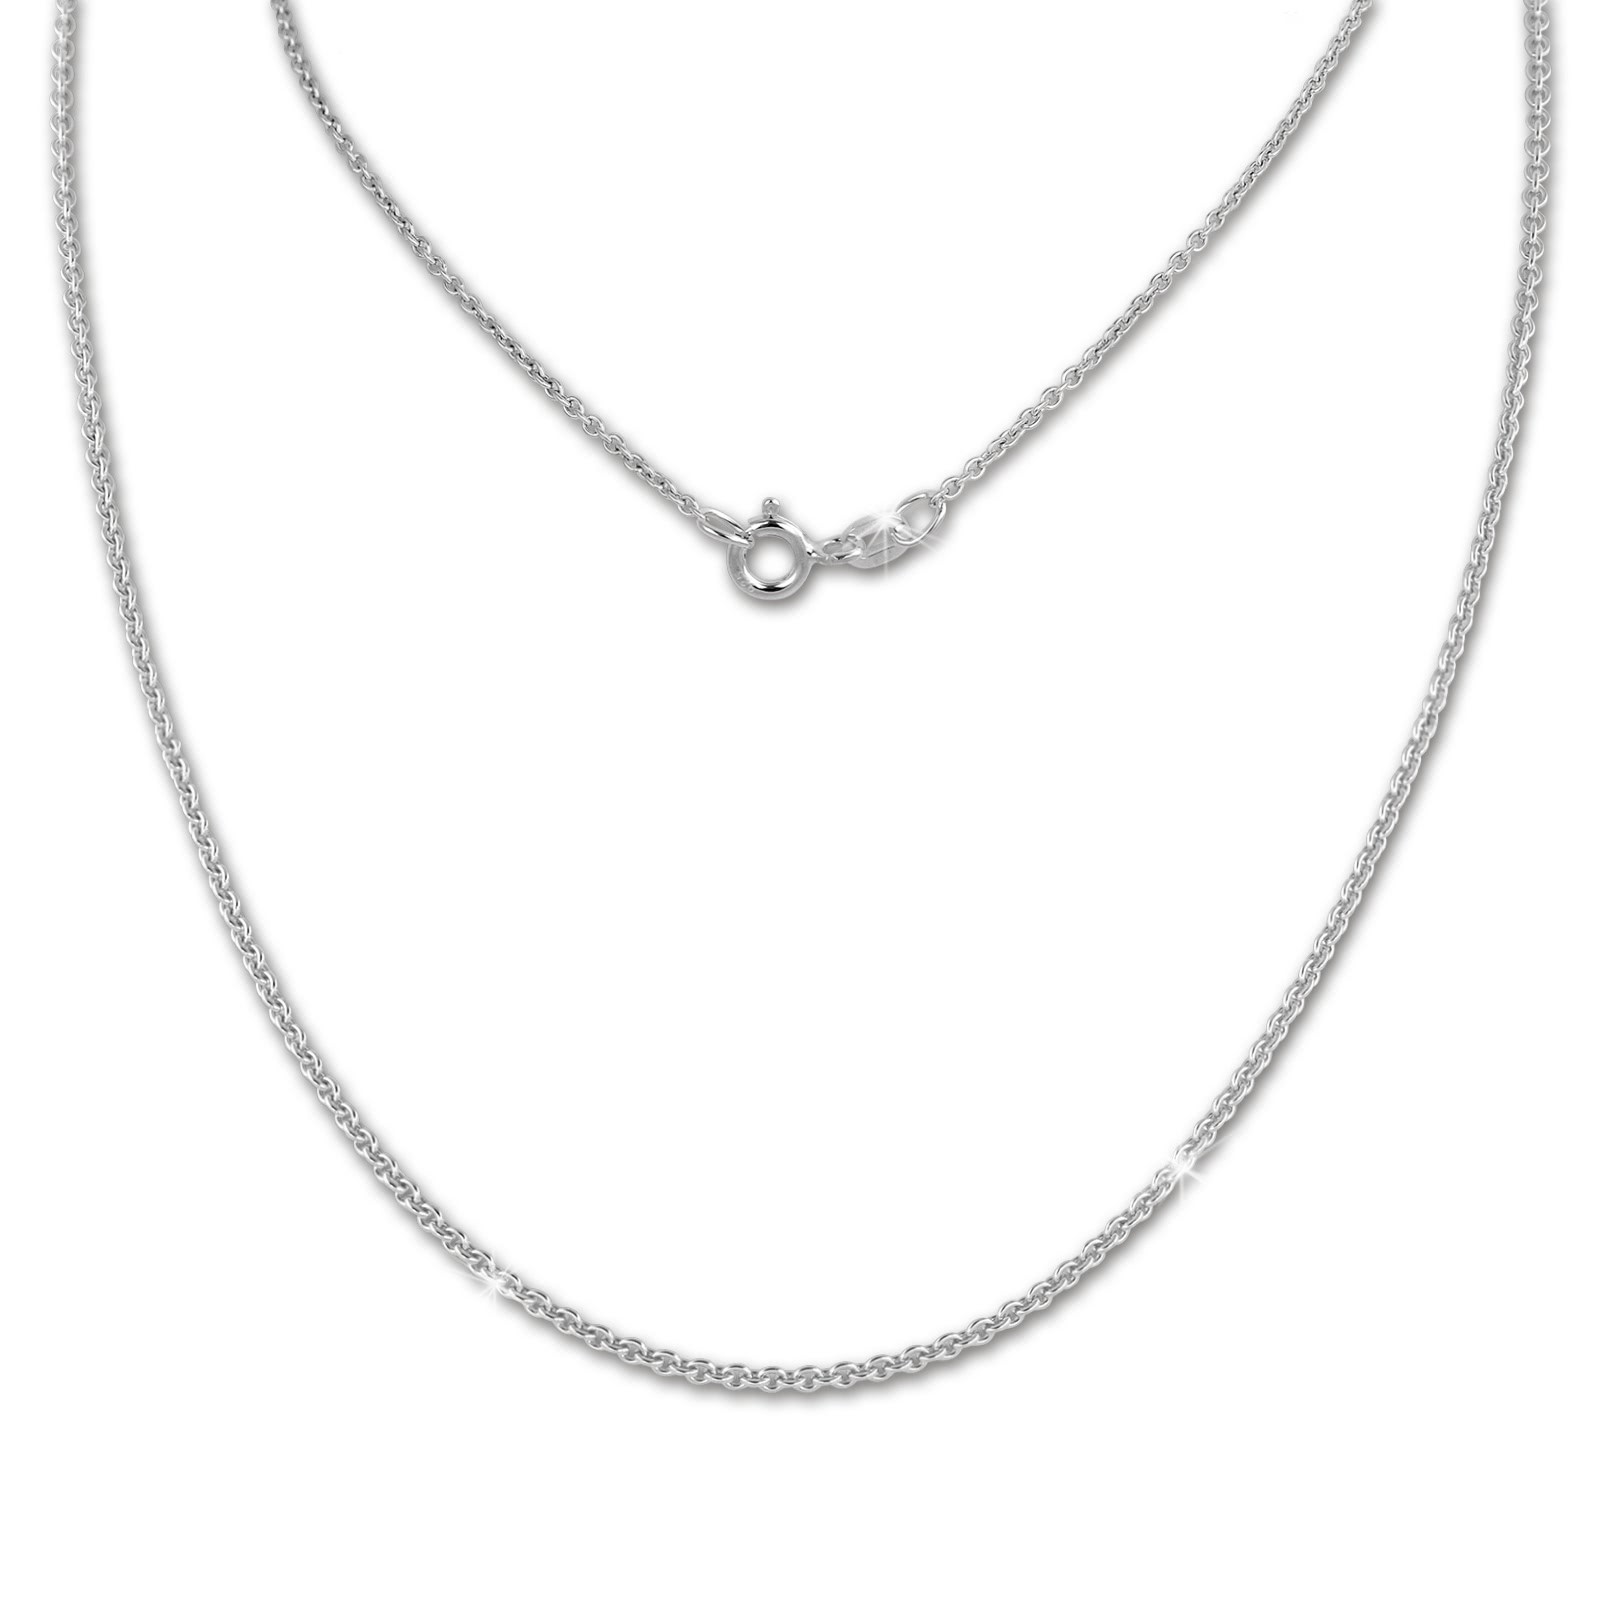 SilberDream Kette Anker rund 925 Sterling Silber 50cm Damen Halskette SDK28850J